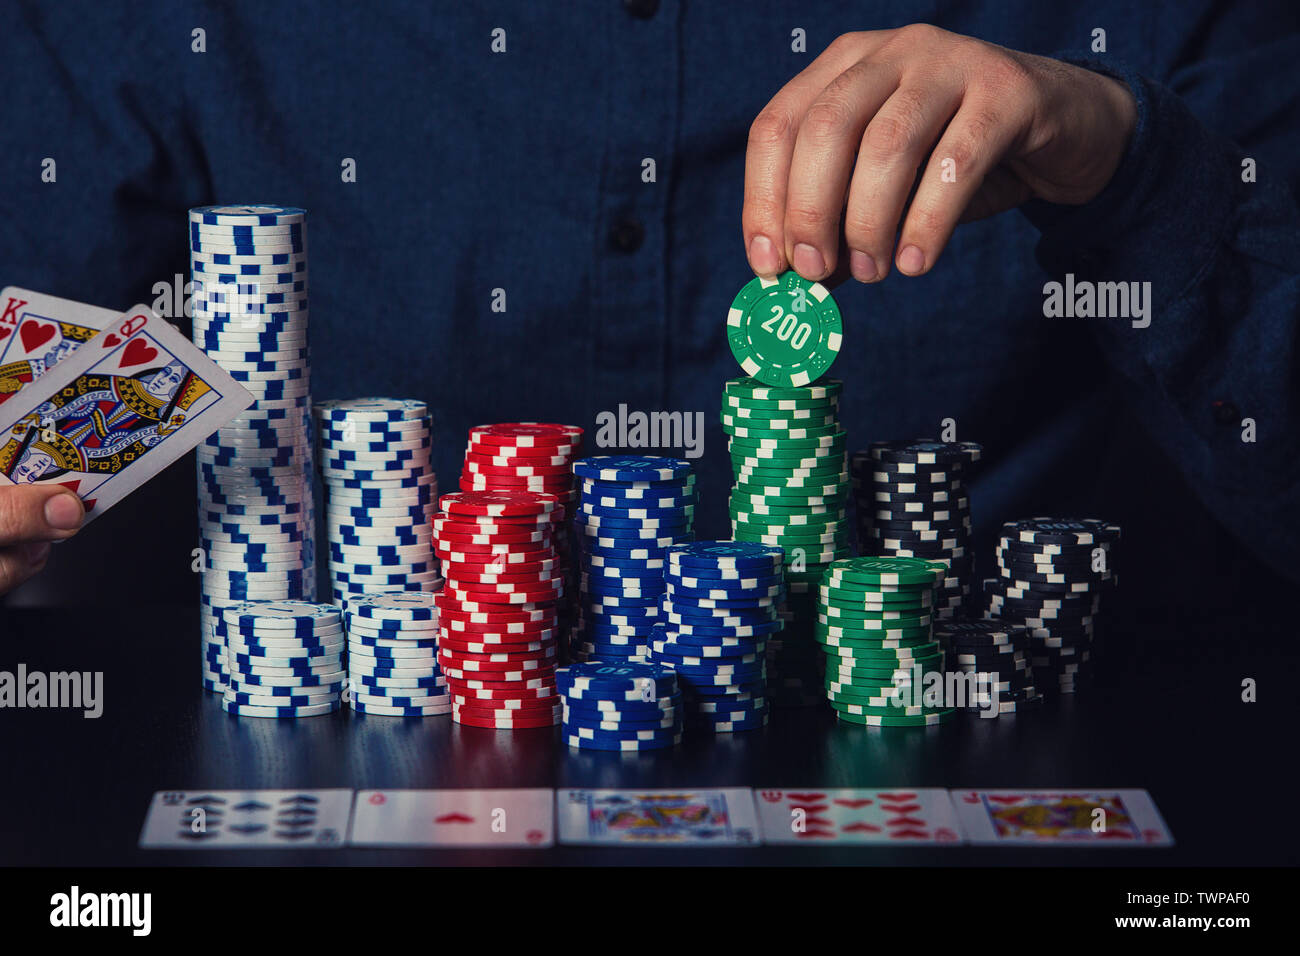 Chiusura del giovane giocatore di poker mani che mostra le schede e prendere chips al tavolo del casinò. Il gioco d'azzardo vincitore torneo concetto di successo oltre il buio torna Foto Stock